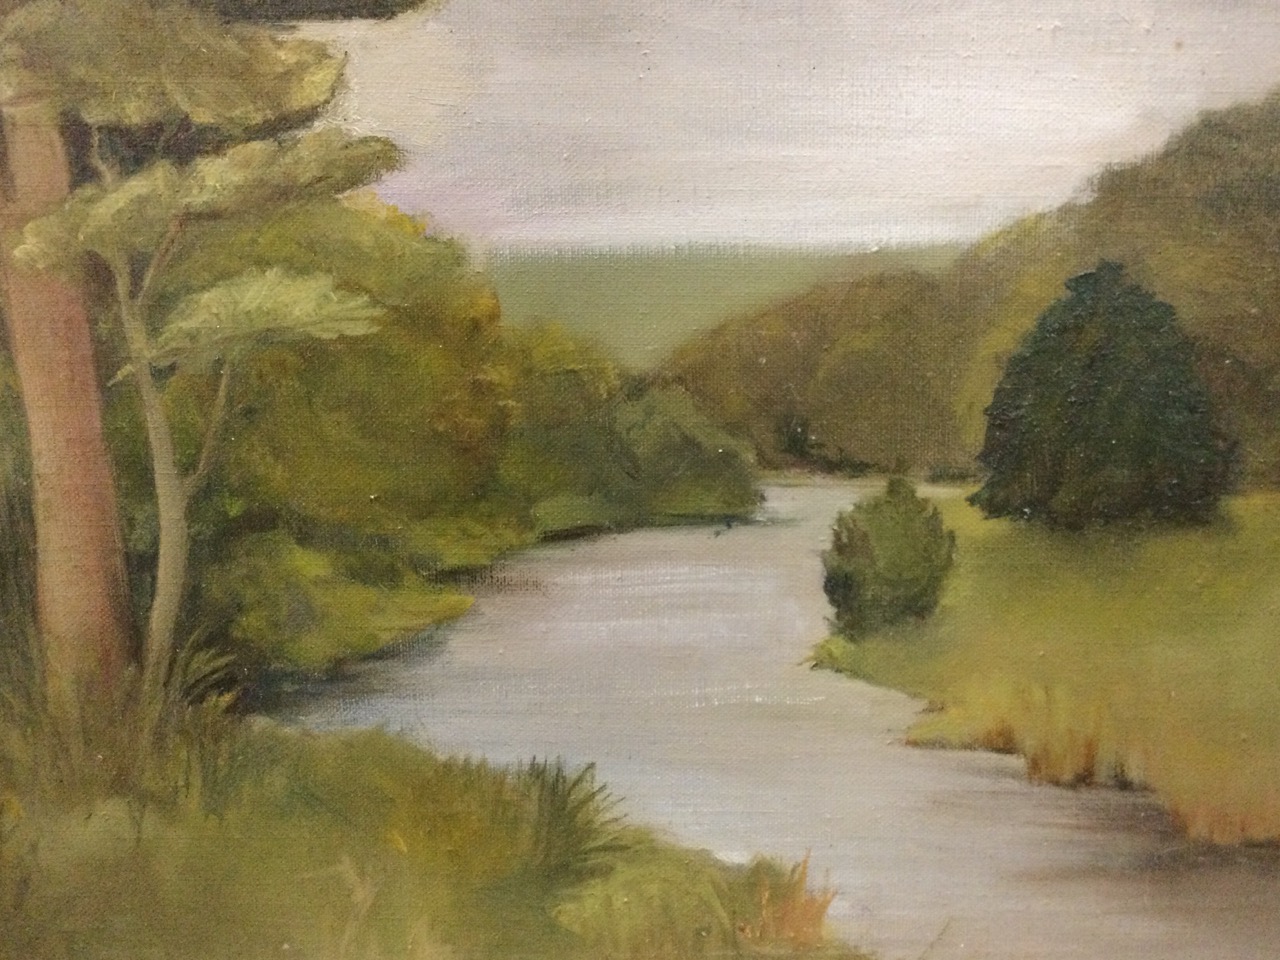 MI Bisset, oil on canvas, river landscape, signed to verso, framed. (15.5in x 13.5in) - Image 3 of 3